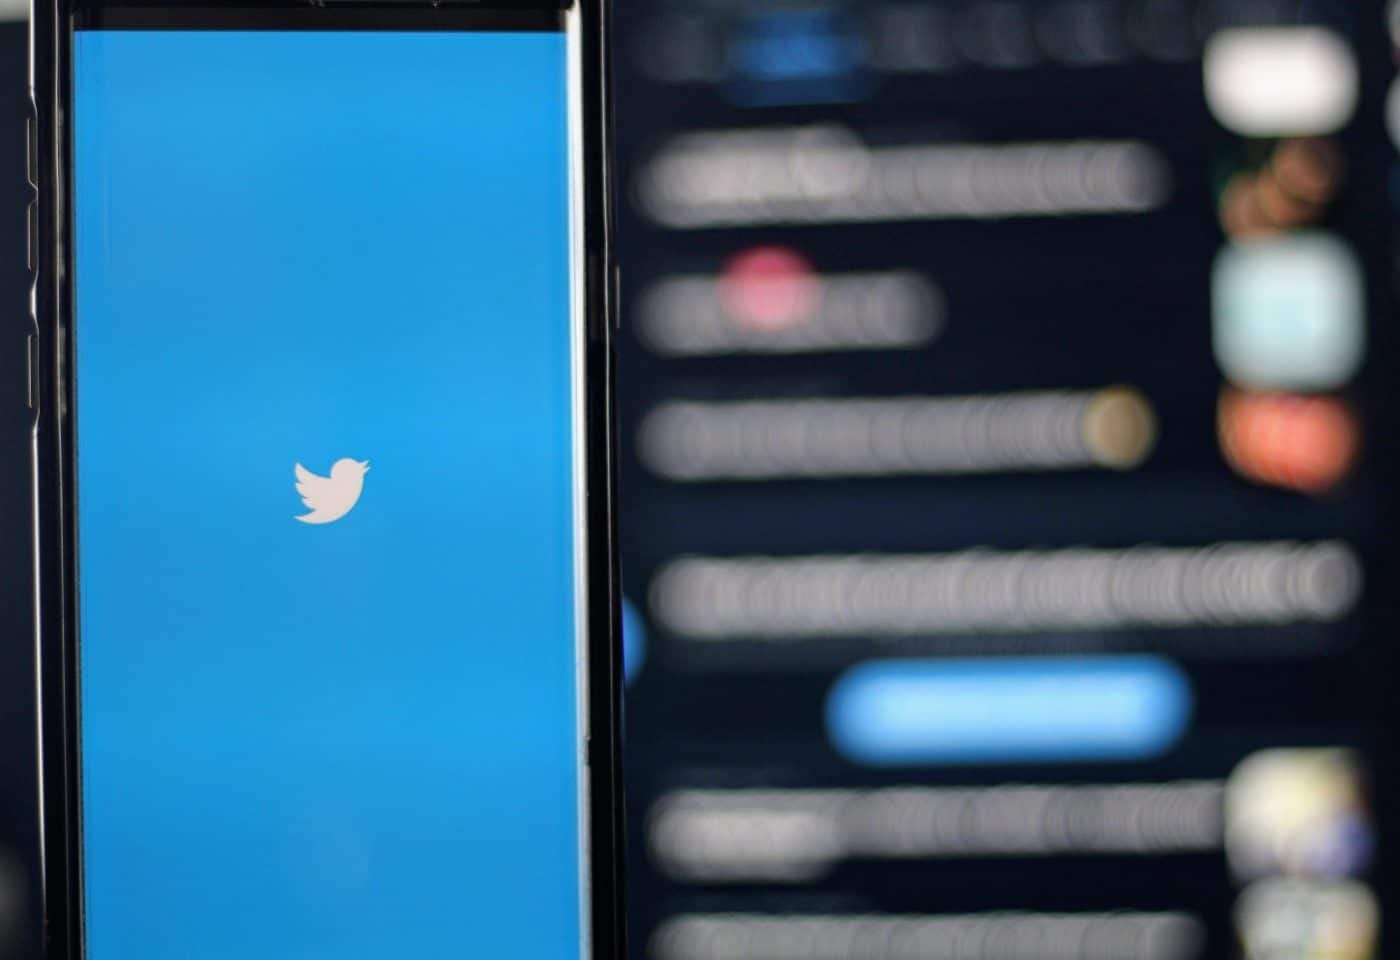 Le logo de Twitter sur l'écran d'un smartphone.